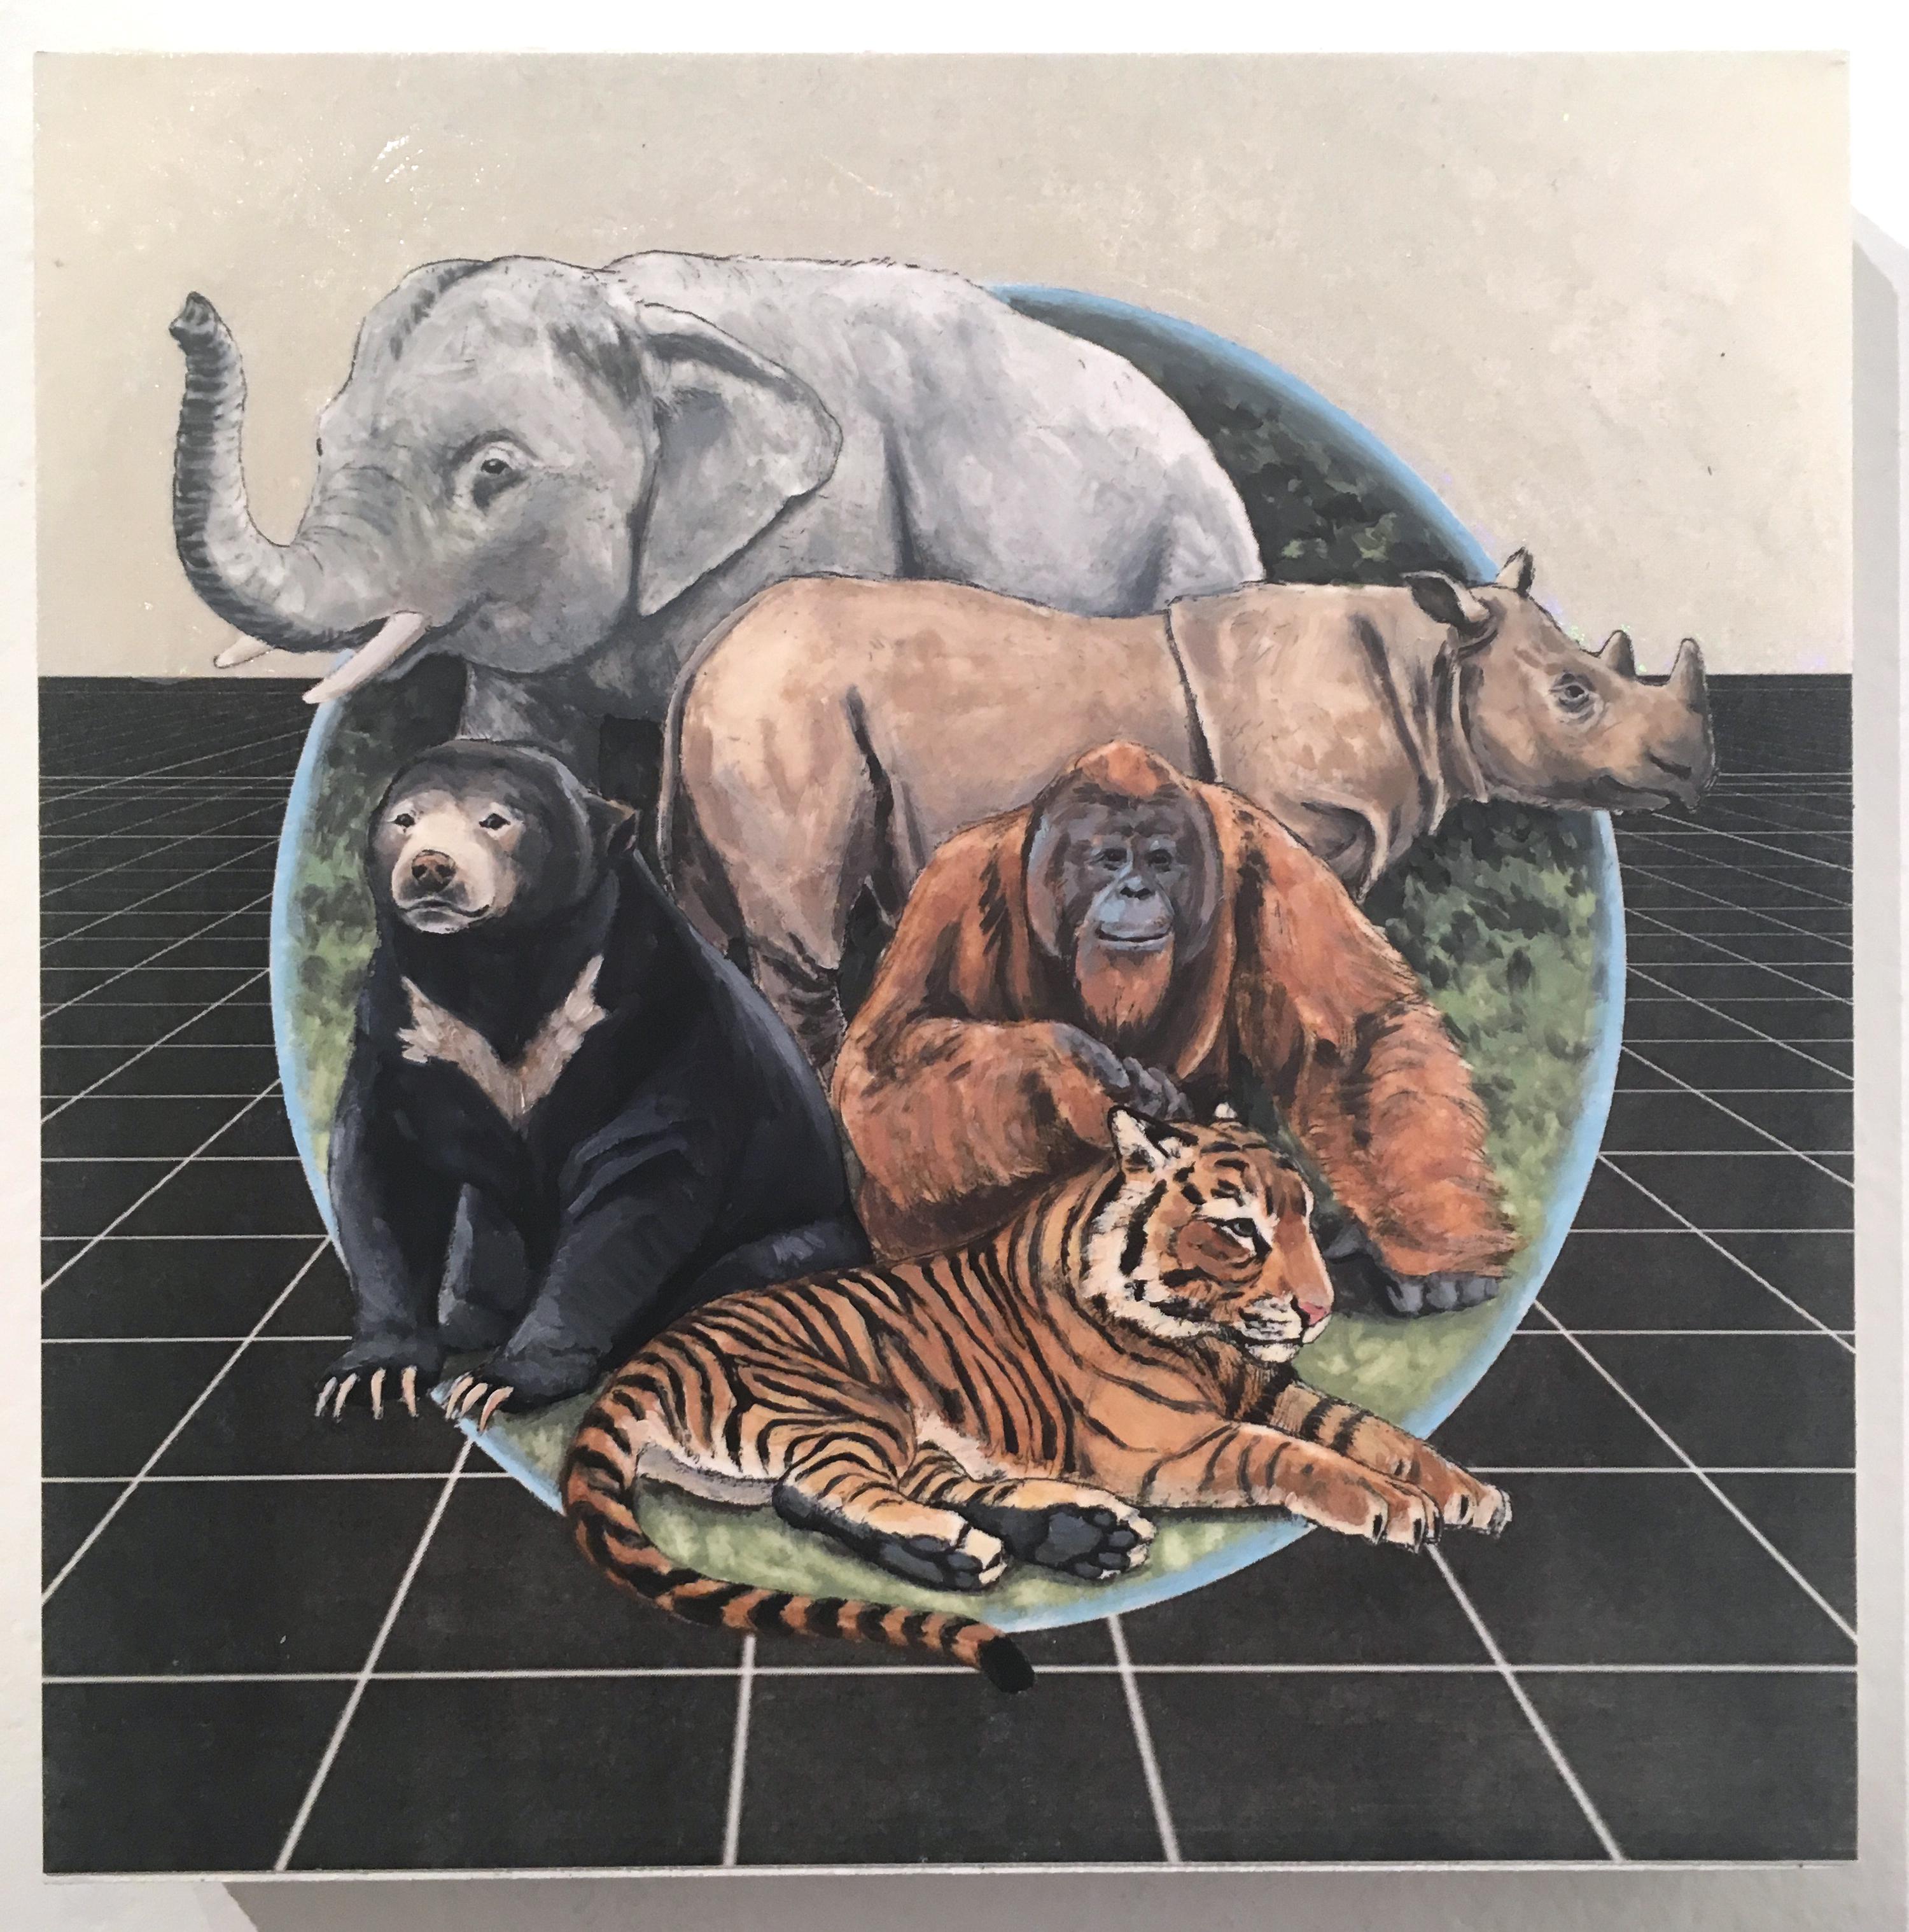 Sumatra and Borneo, 2019 - Painting by Alexis Kandra